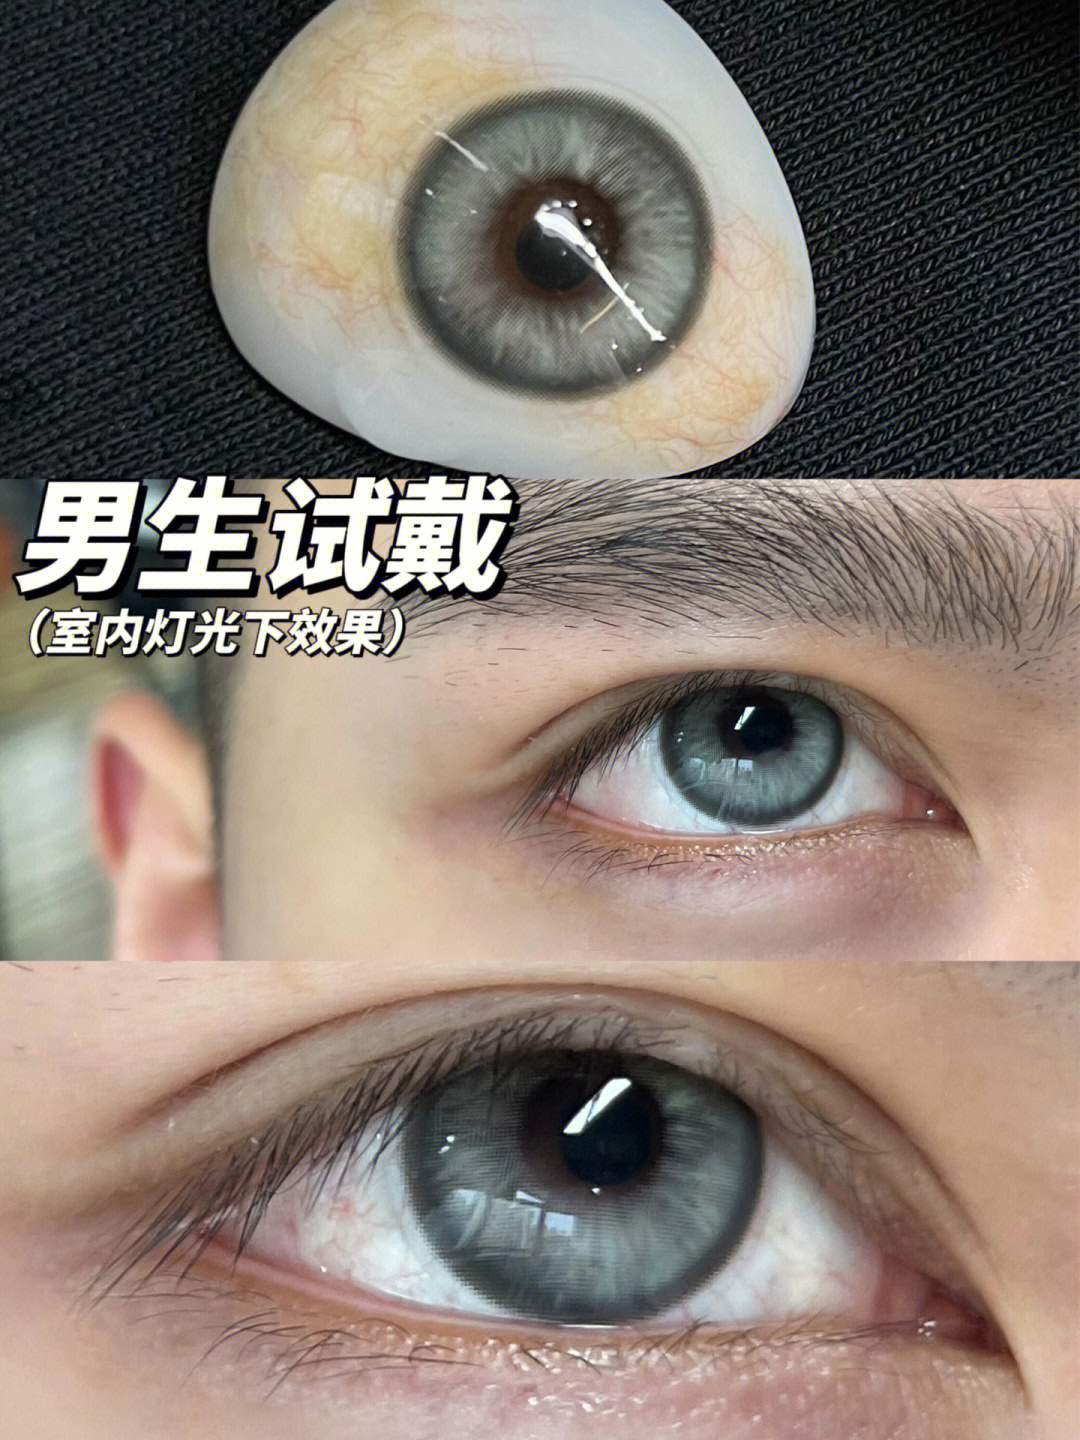 同时亚洲人佩戴能够拥有跟外国人一样的瞳色!直径145 着色直径13